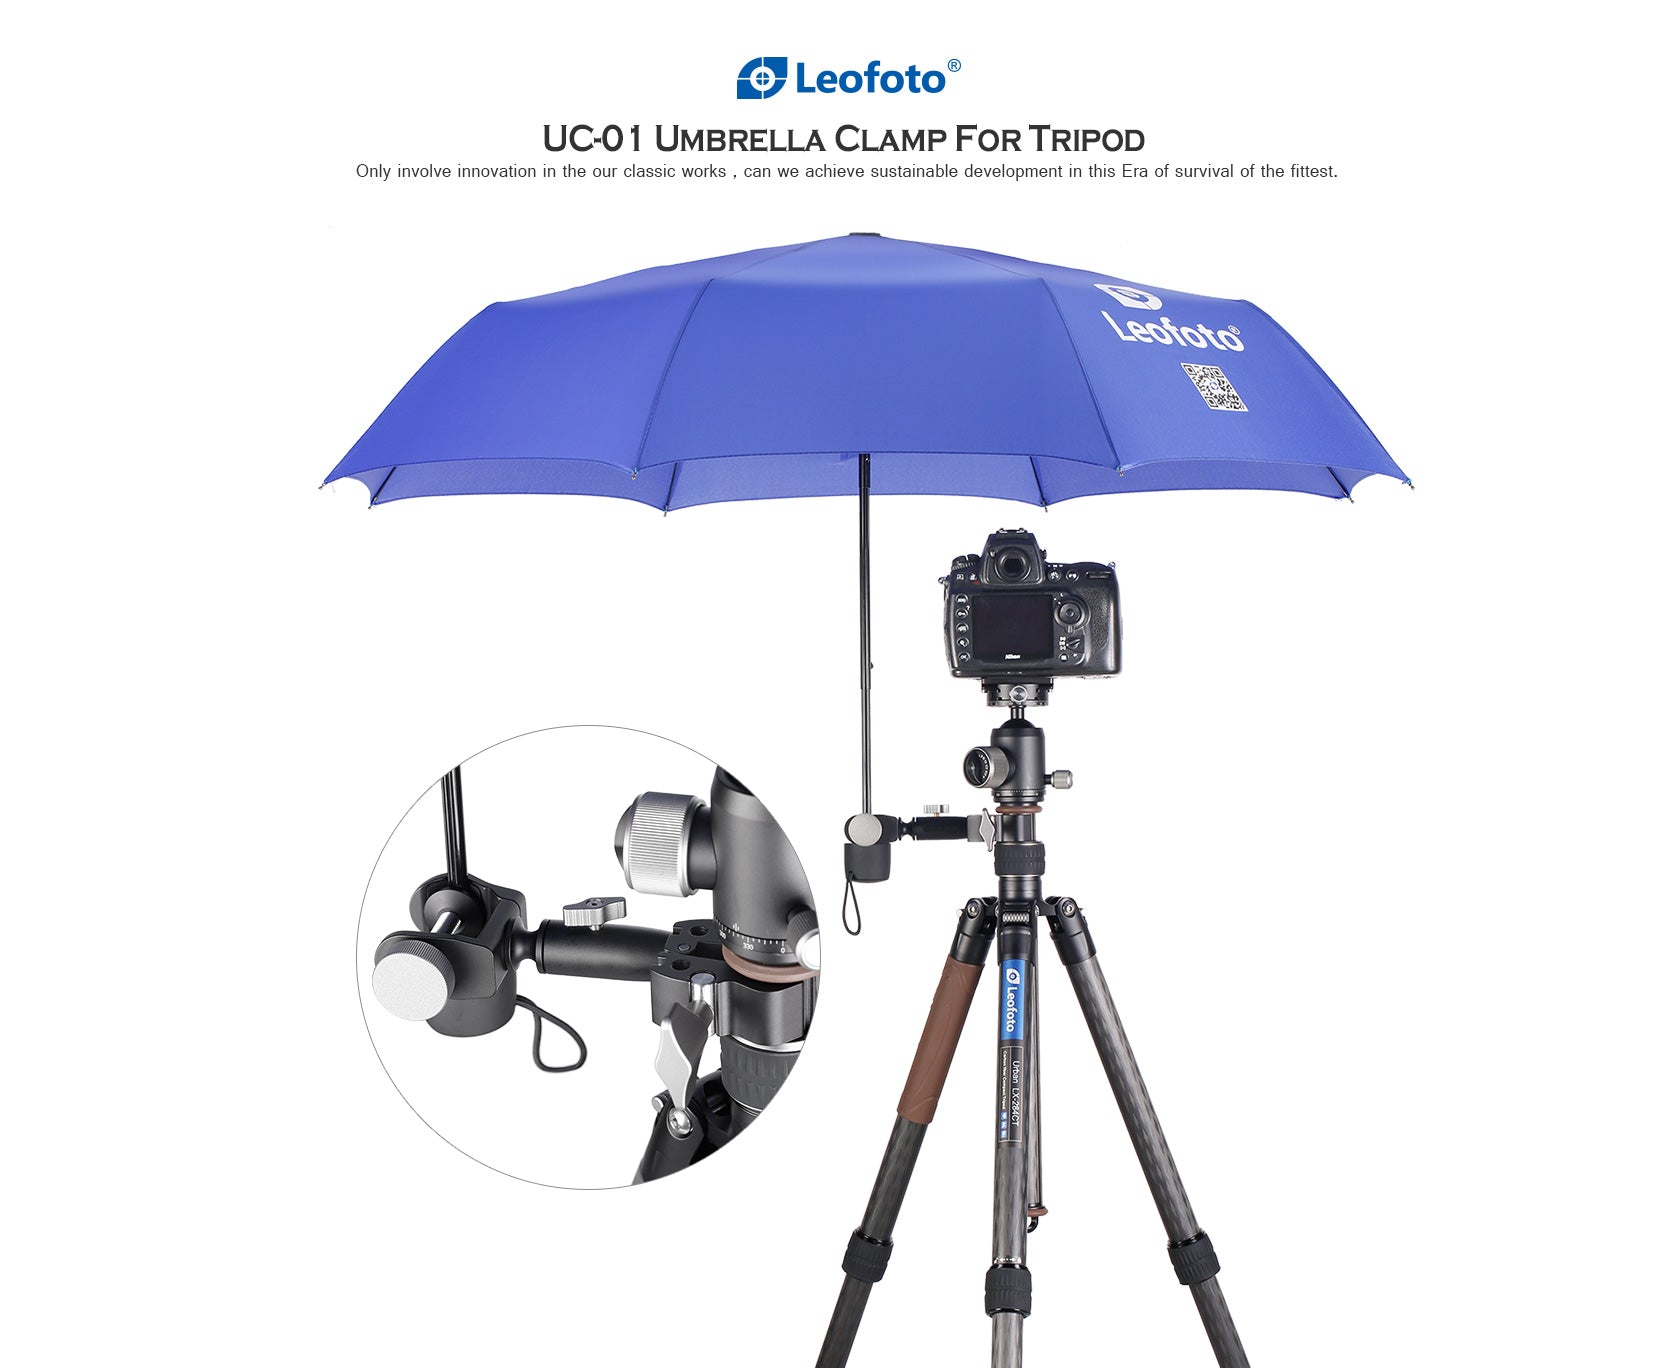 Leofoto UC-01 Umbrella Clamp for Center Columns